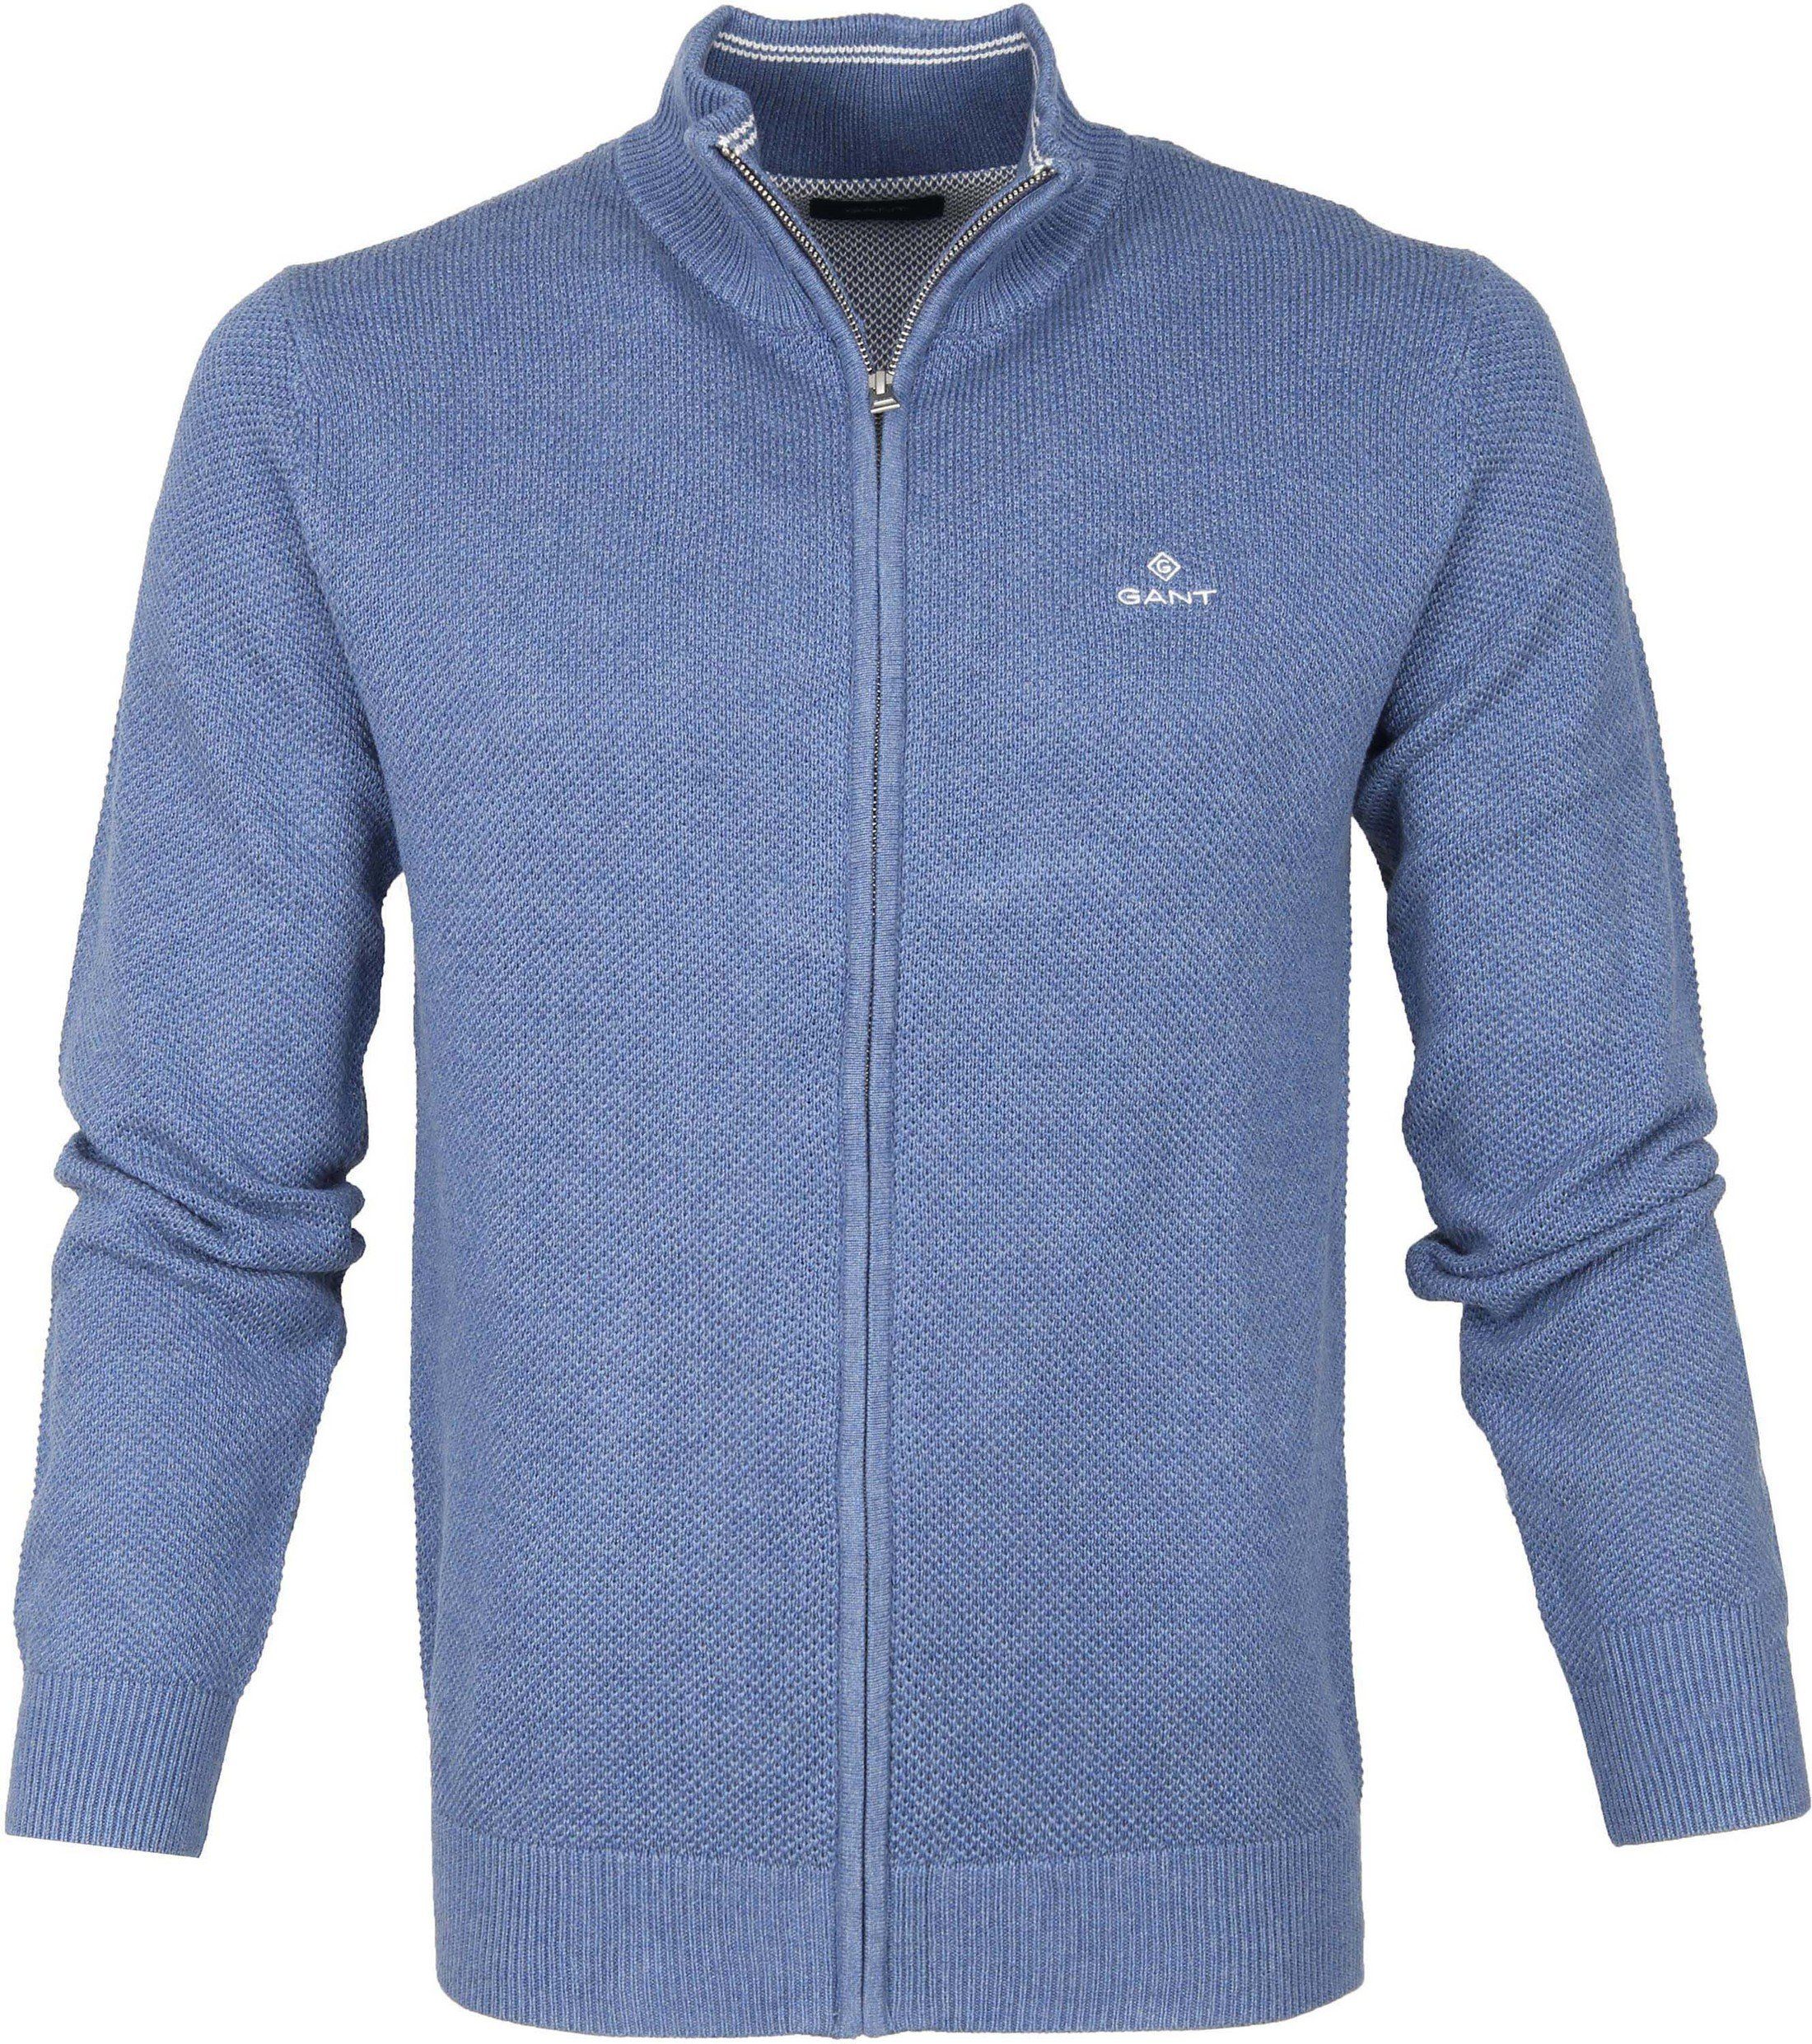 Gant Pique Zip Sweater Dark Blue Blue size 3XL